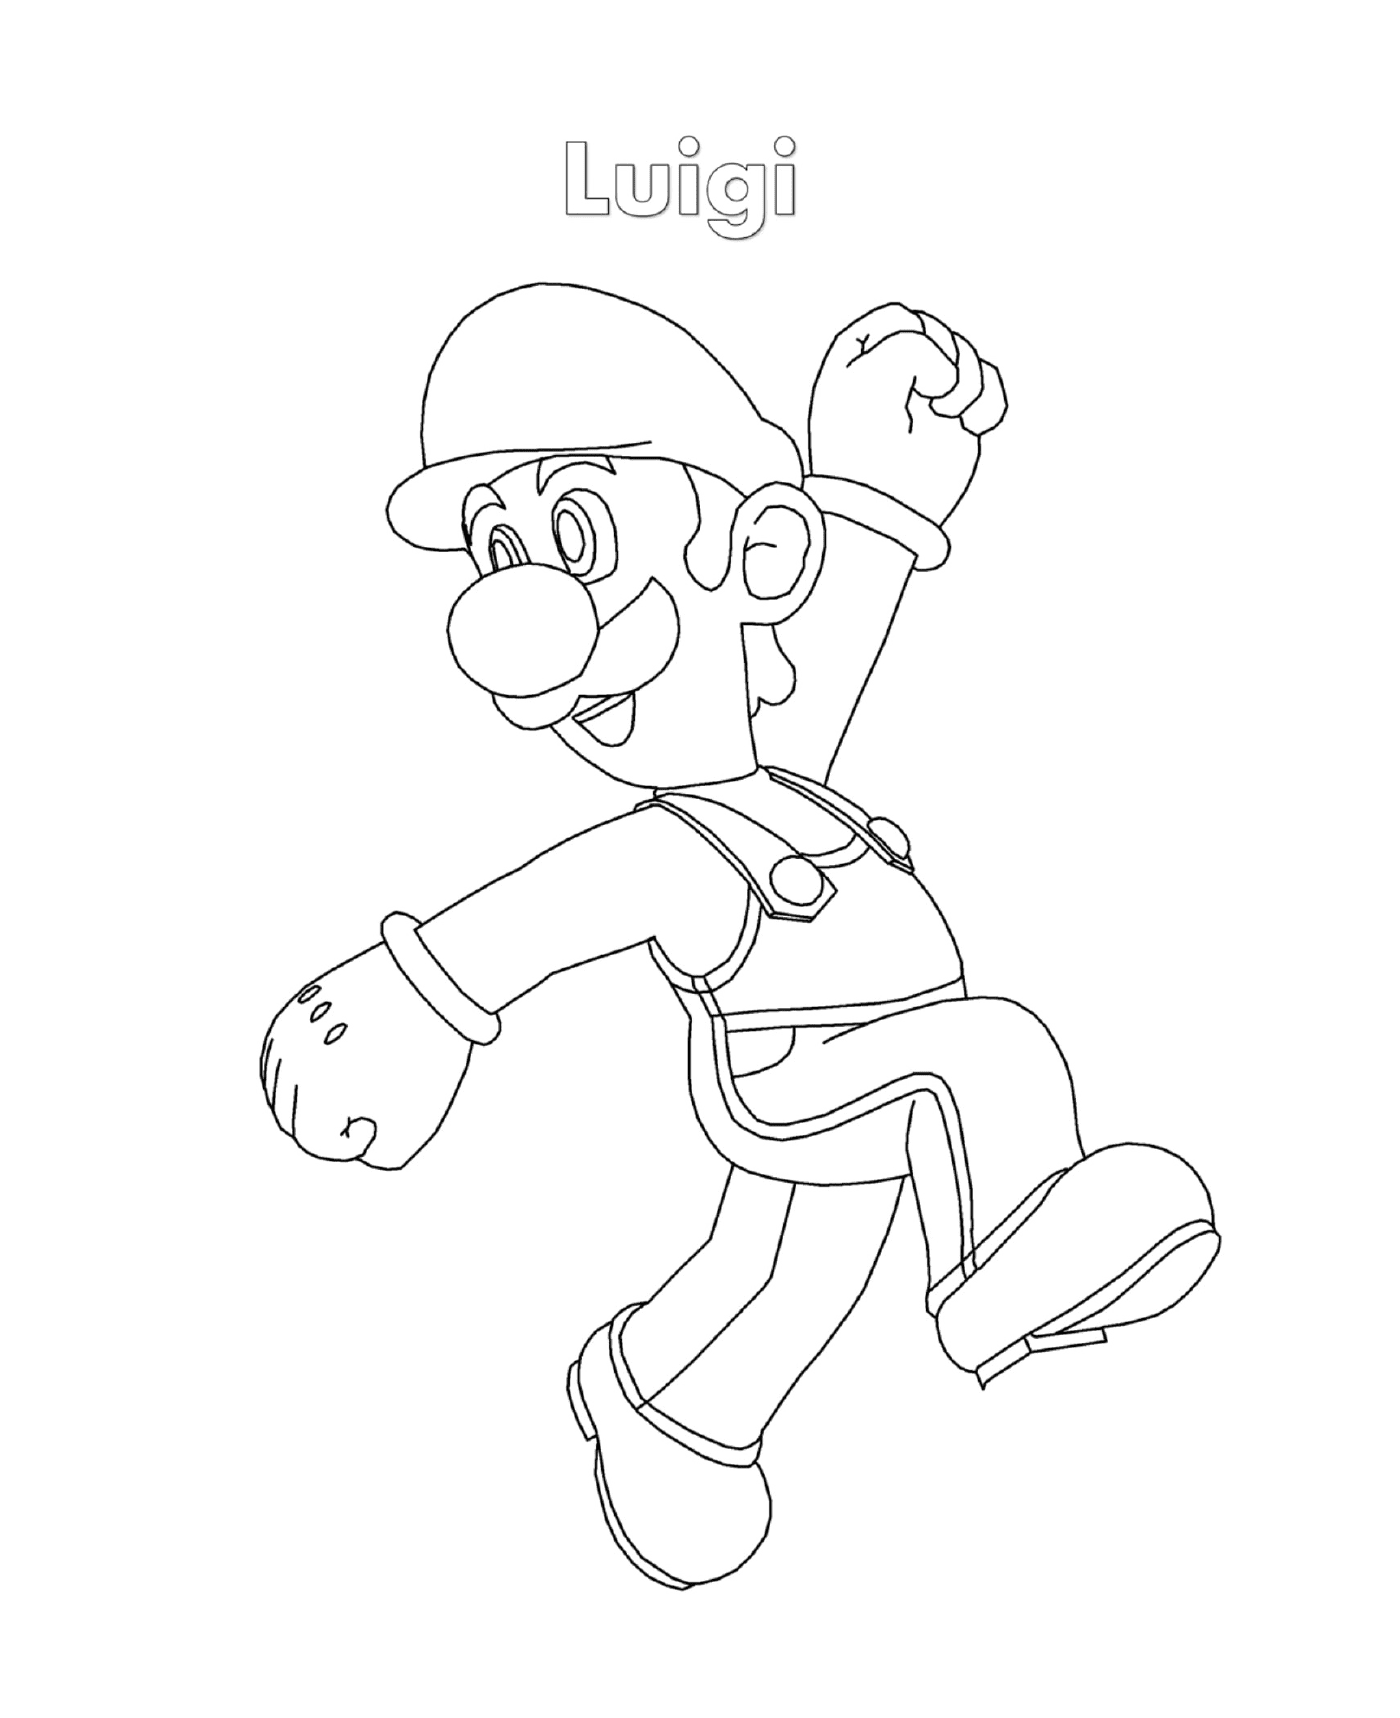  Luigi da Super Mario, un uomo che corre 